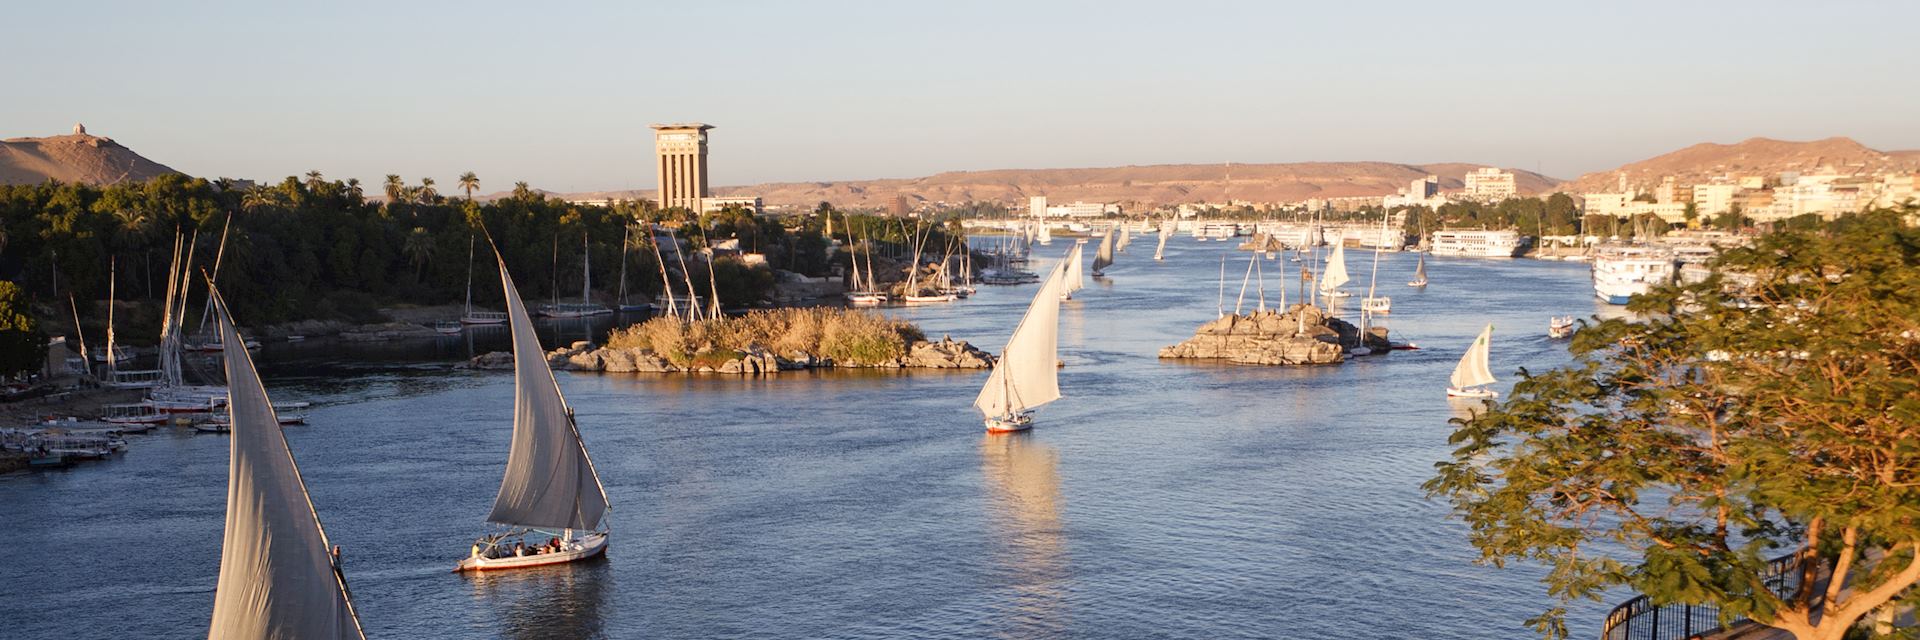 River Nile, Aswan